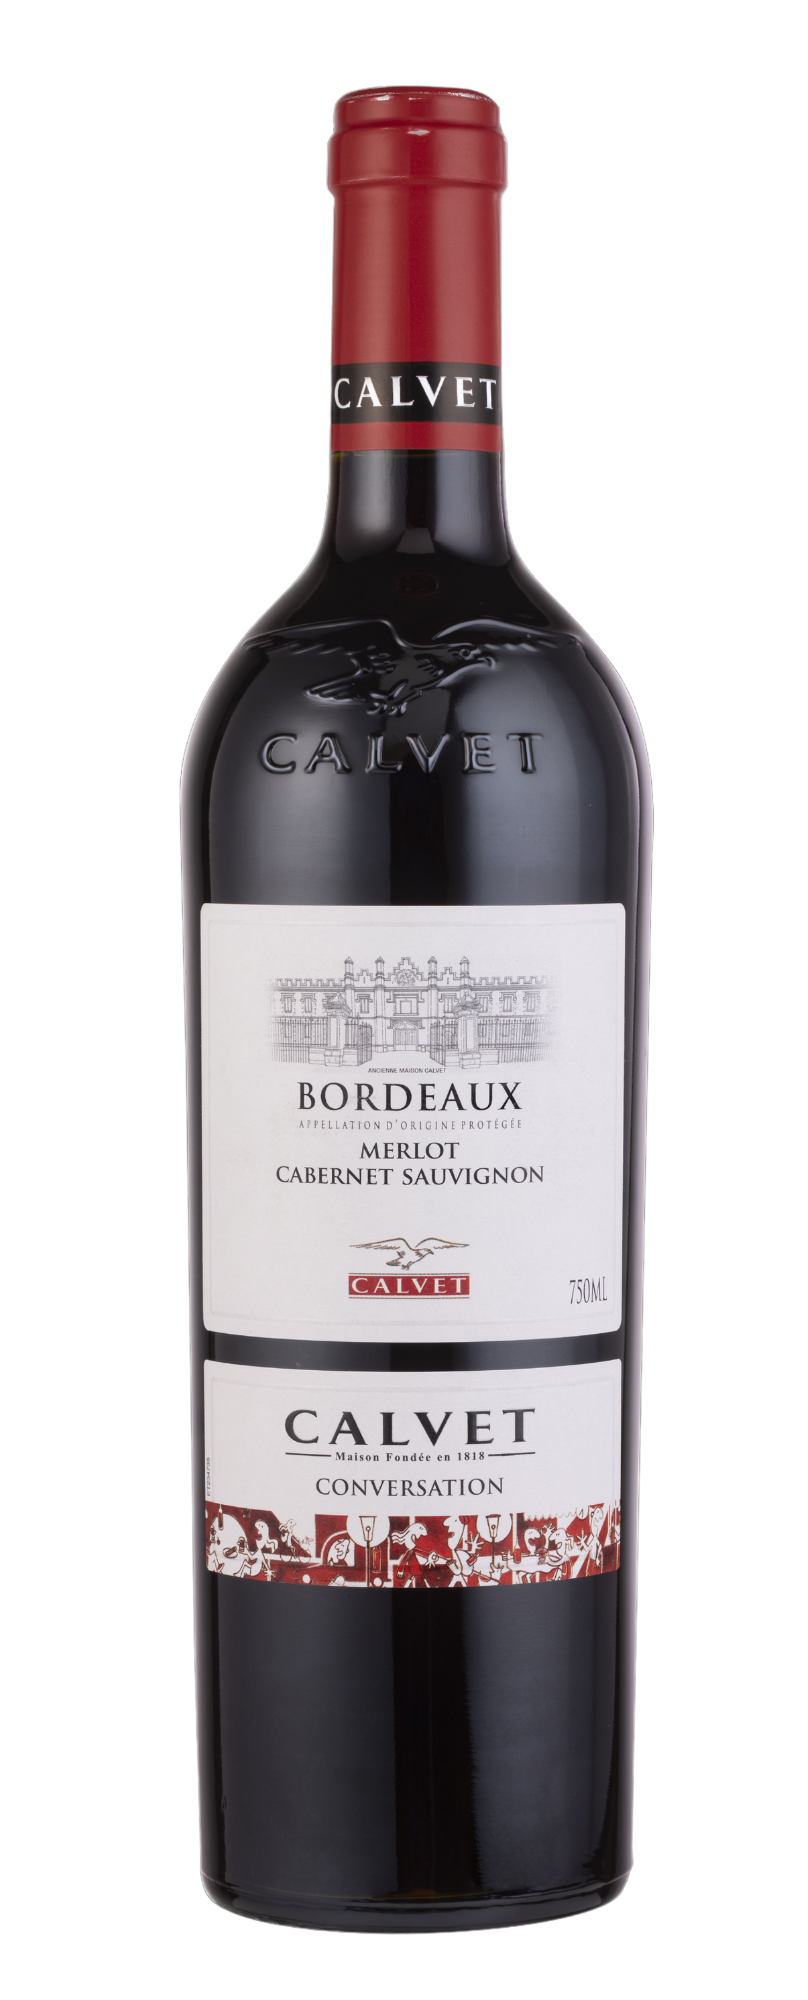 Calvet Conversation Bordeaux Merlot Cabernet Sauvignon